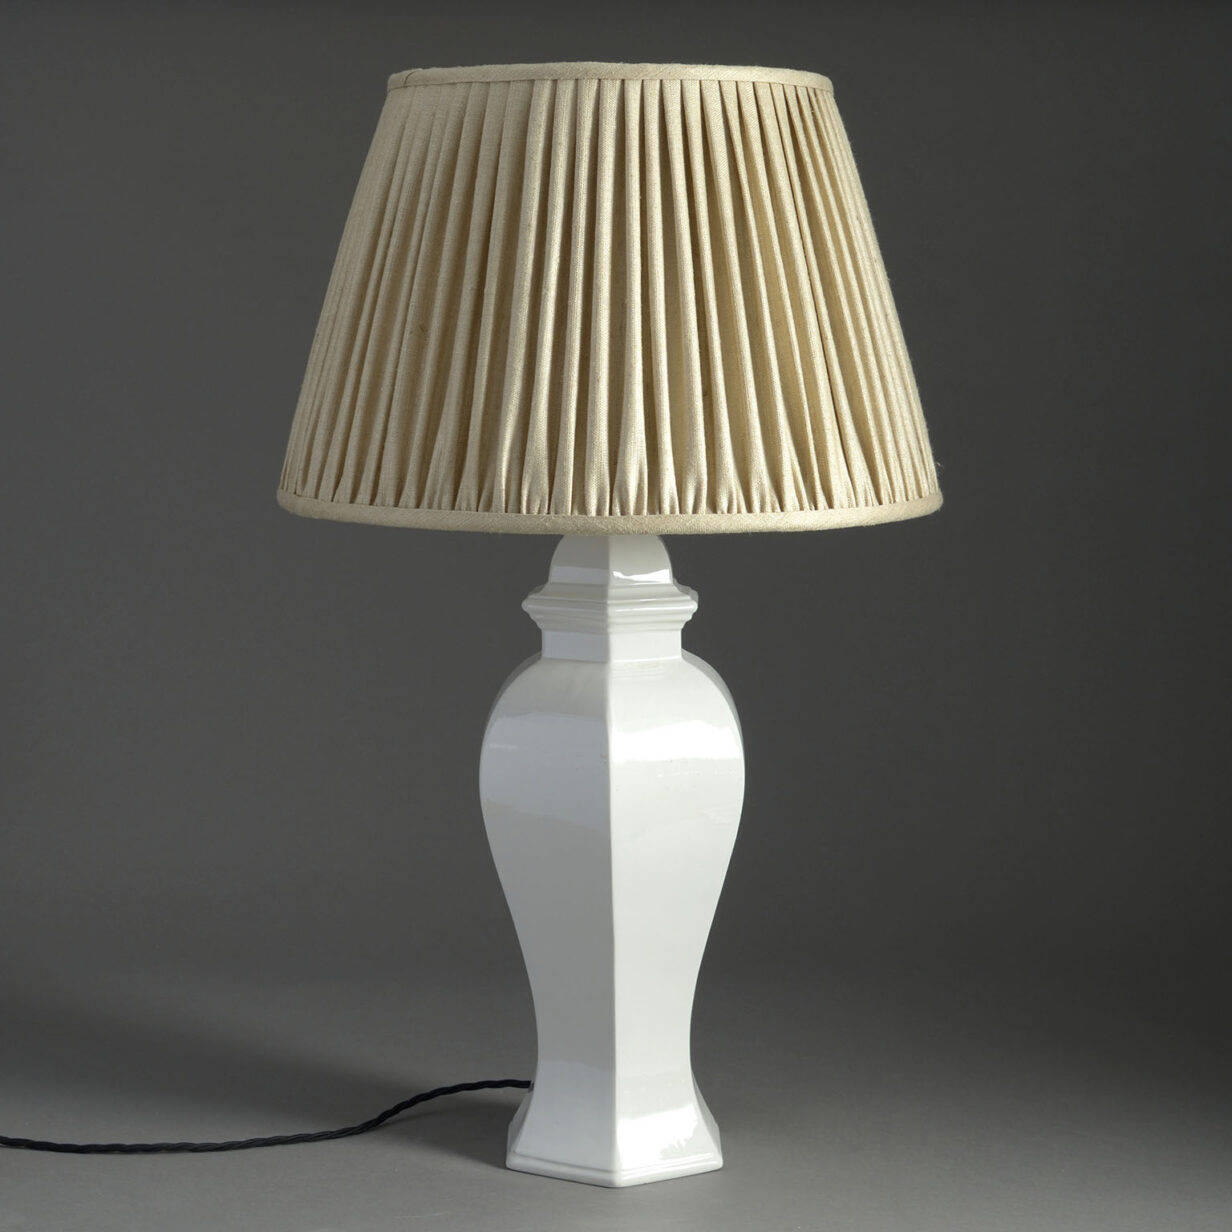 White glazed table lamp